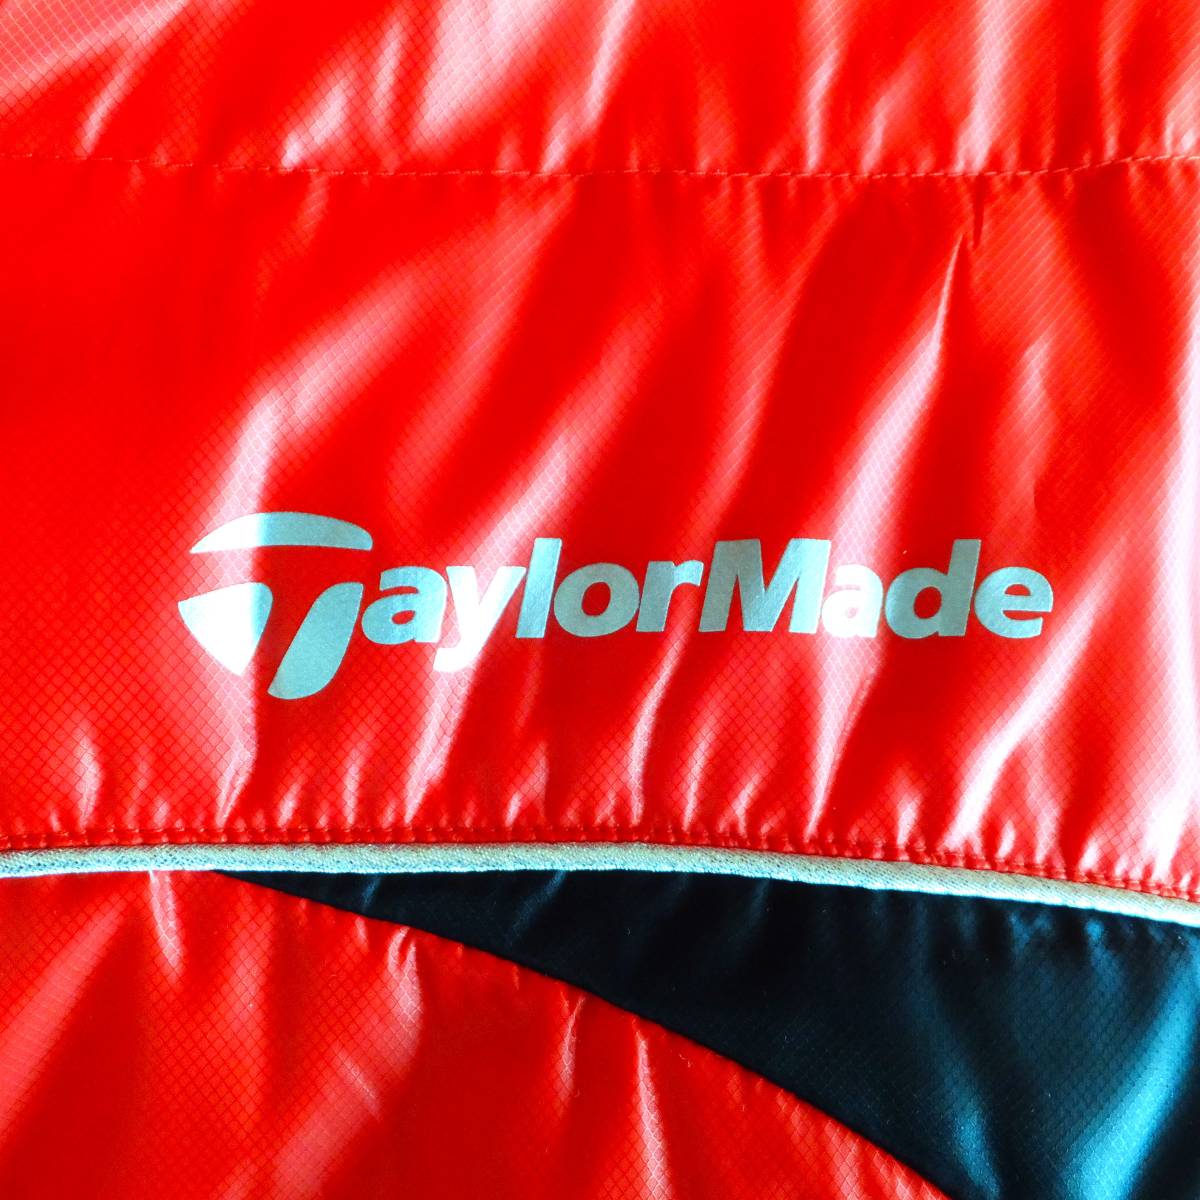  новый товар TaylorMade TaylorMade свет пуховик L размер не использовался down 80% перо 20%. способ обычная цена Y26.000